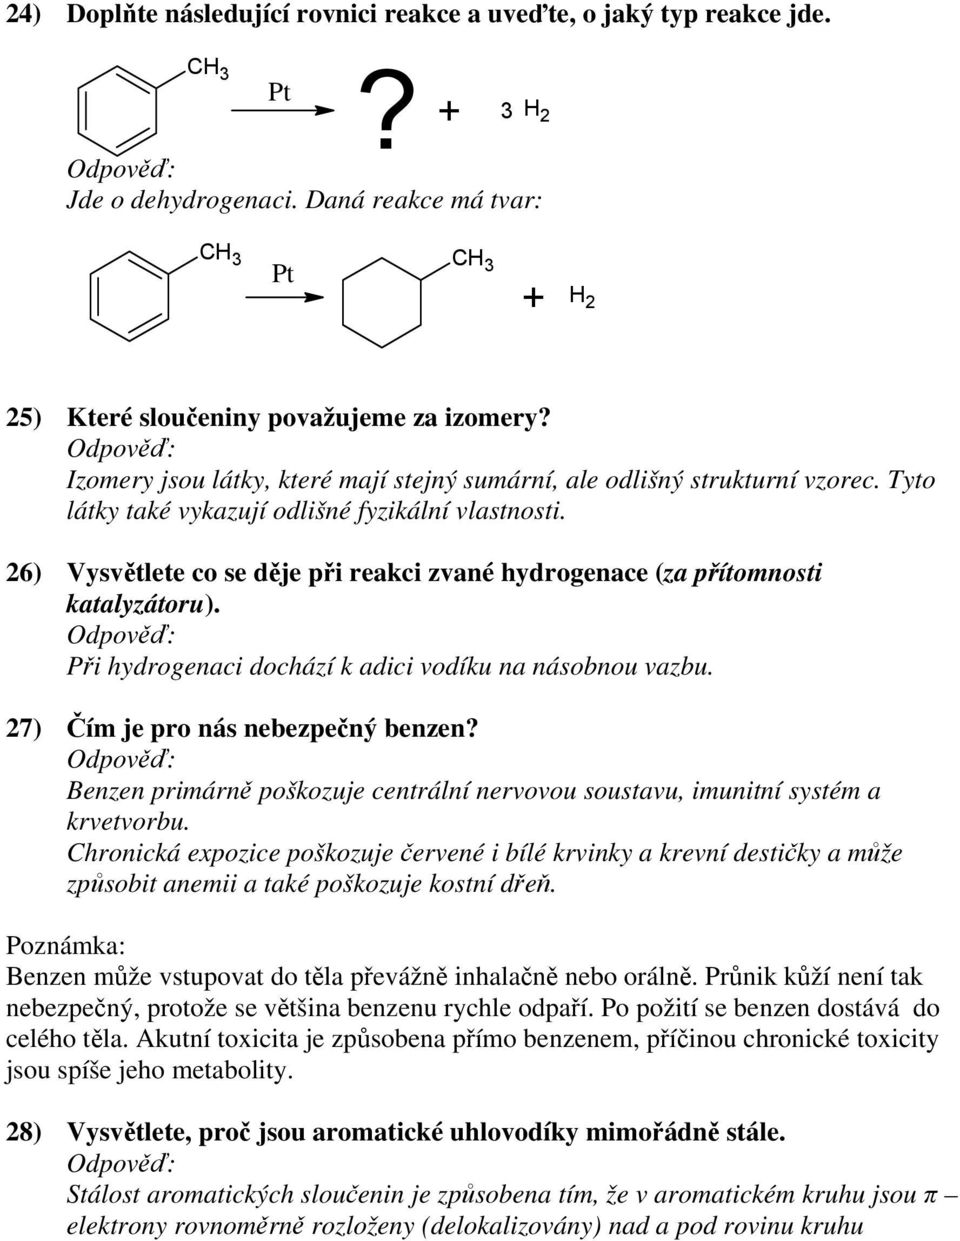 26) Vysvětlete co se děje při reakci zvané hydrogenace (za přítomnosti katalyzátoru). Při hydrogenaci dochází k adici vodíku na násobnou vazbu. 27) Čím je pro nás nebezpečný benzen?